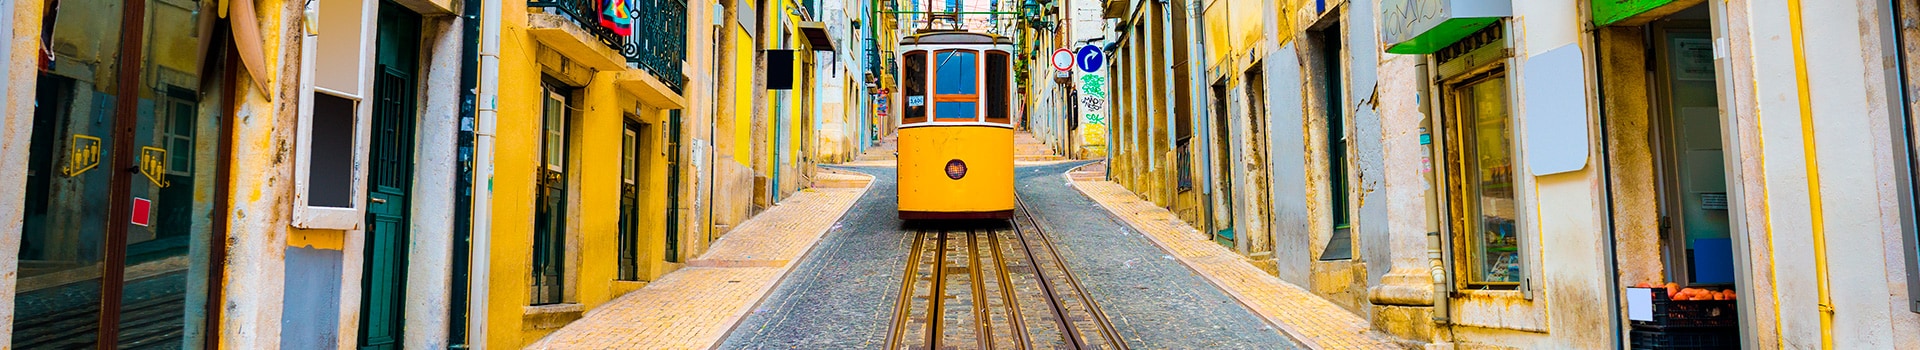 Porto - Lisbon